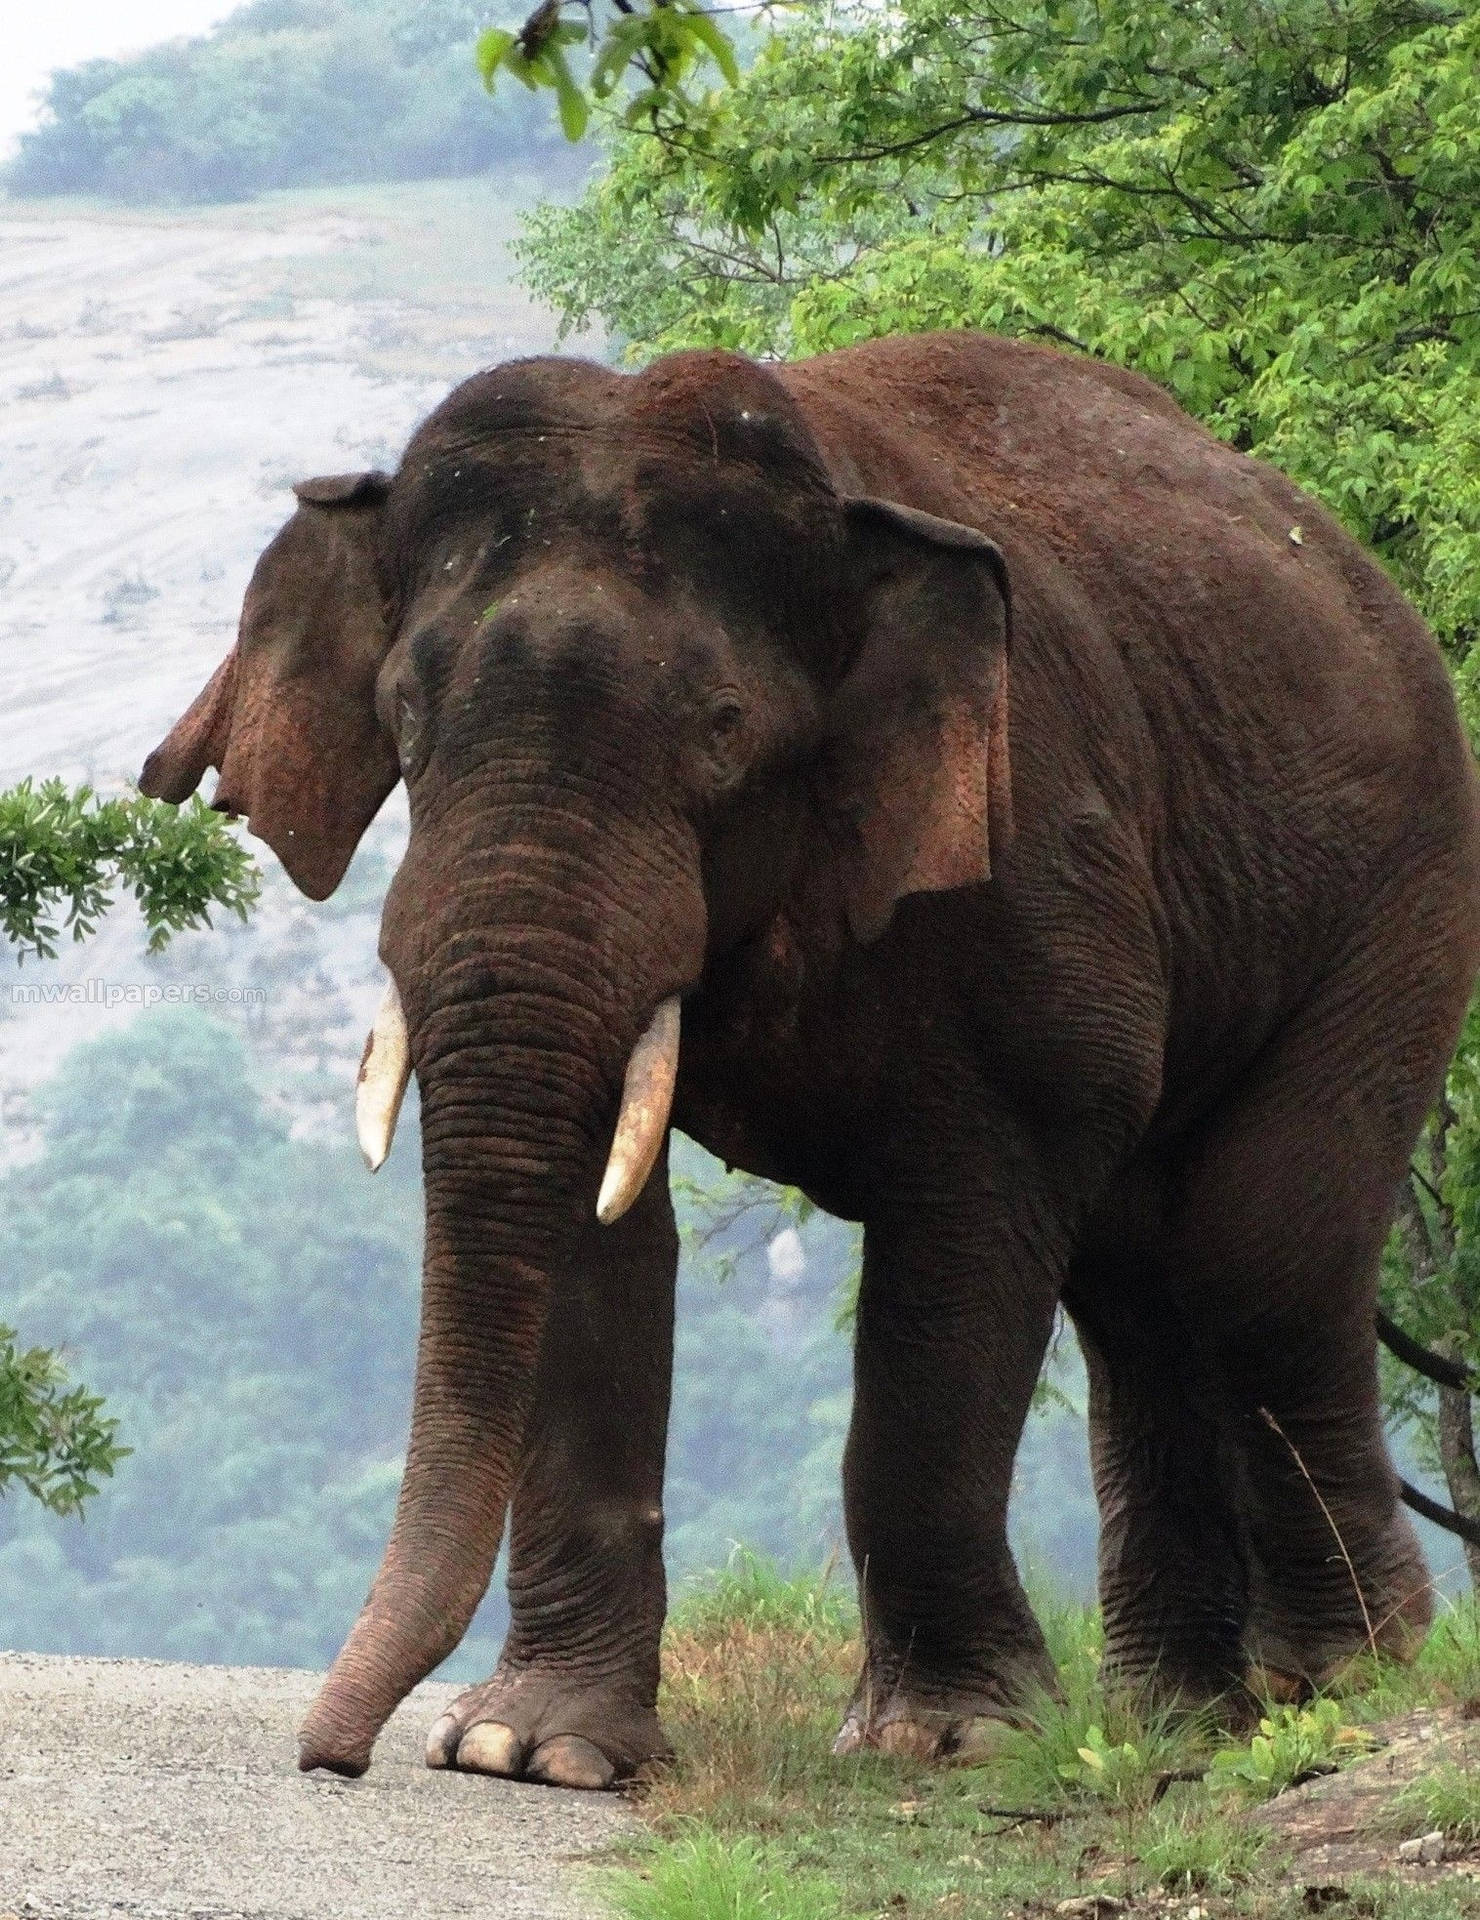 Bildafrikanischer Elefant In Seinem Natürlichen Lebensraum. Wallpaper